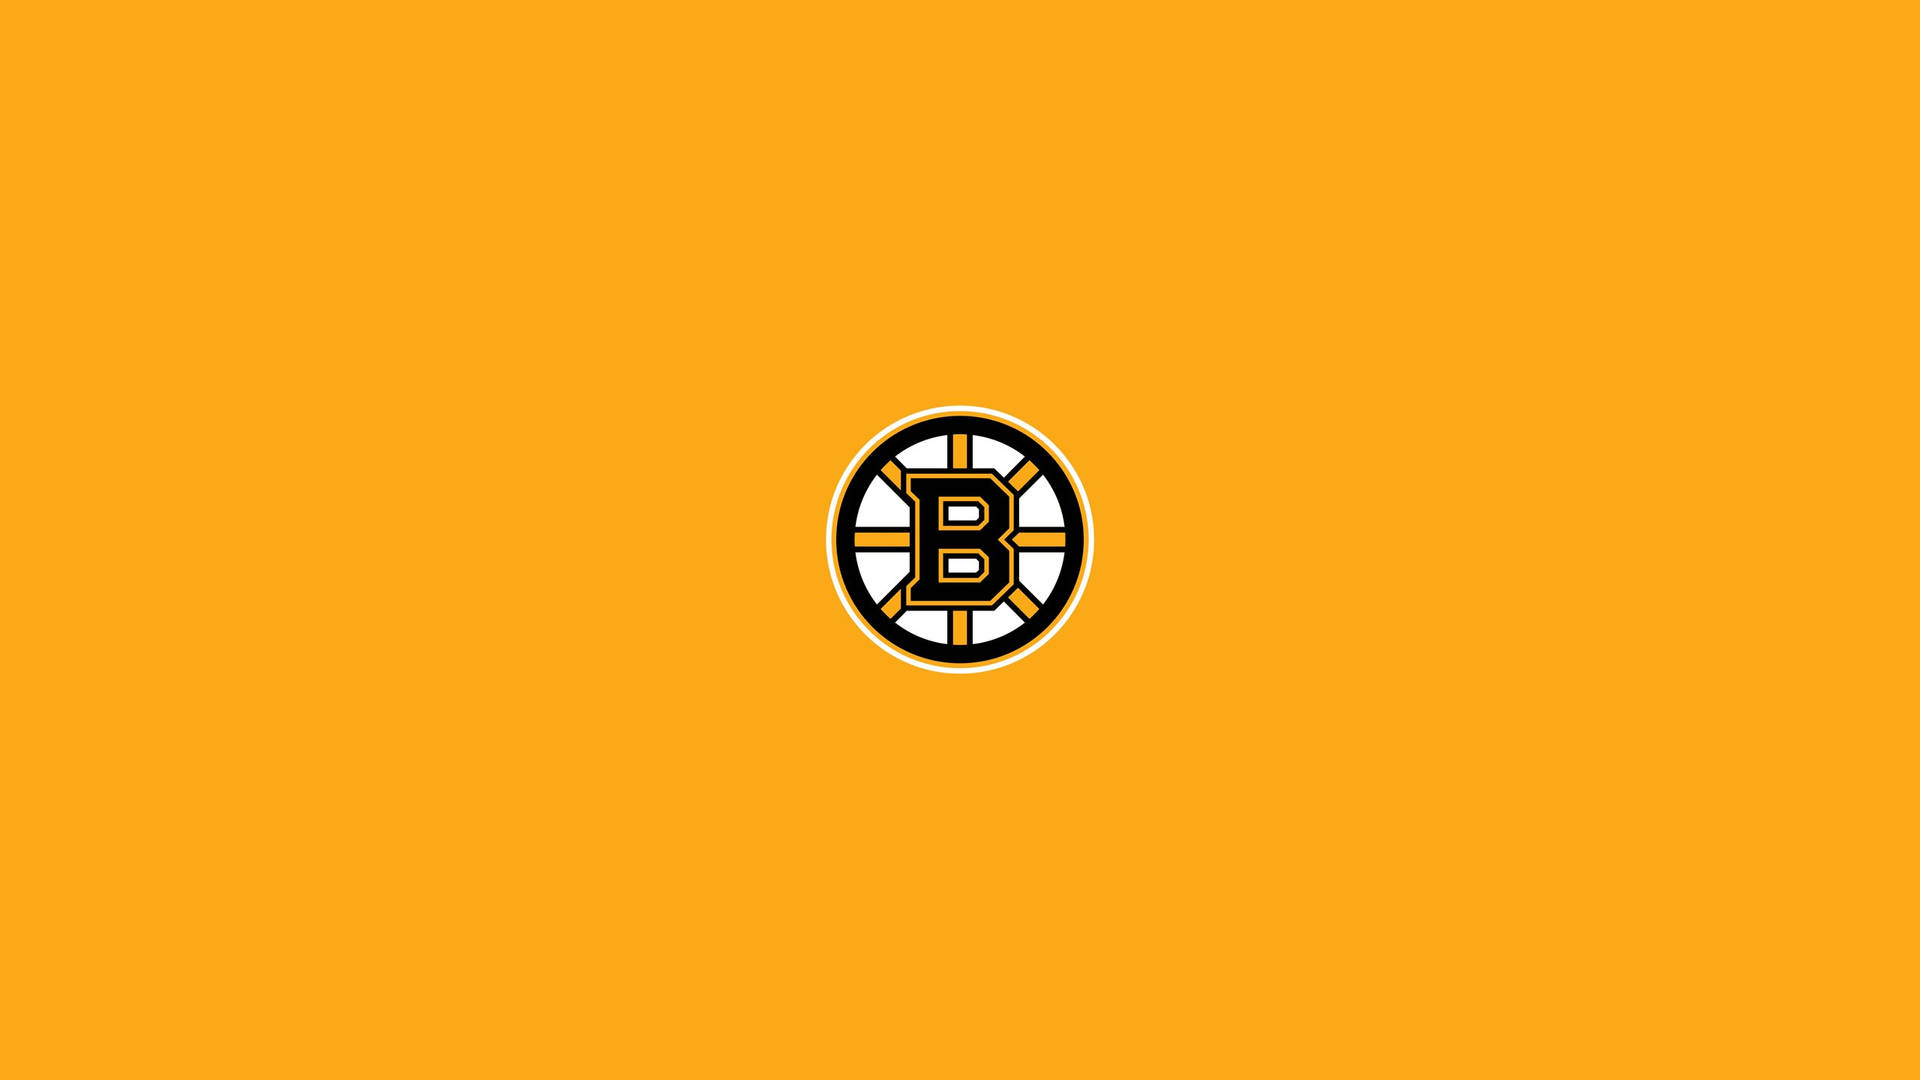 Bostonbruins-logotyp I Minimalistiskt Gult. Wallpaper